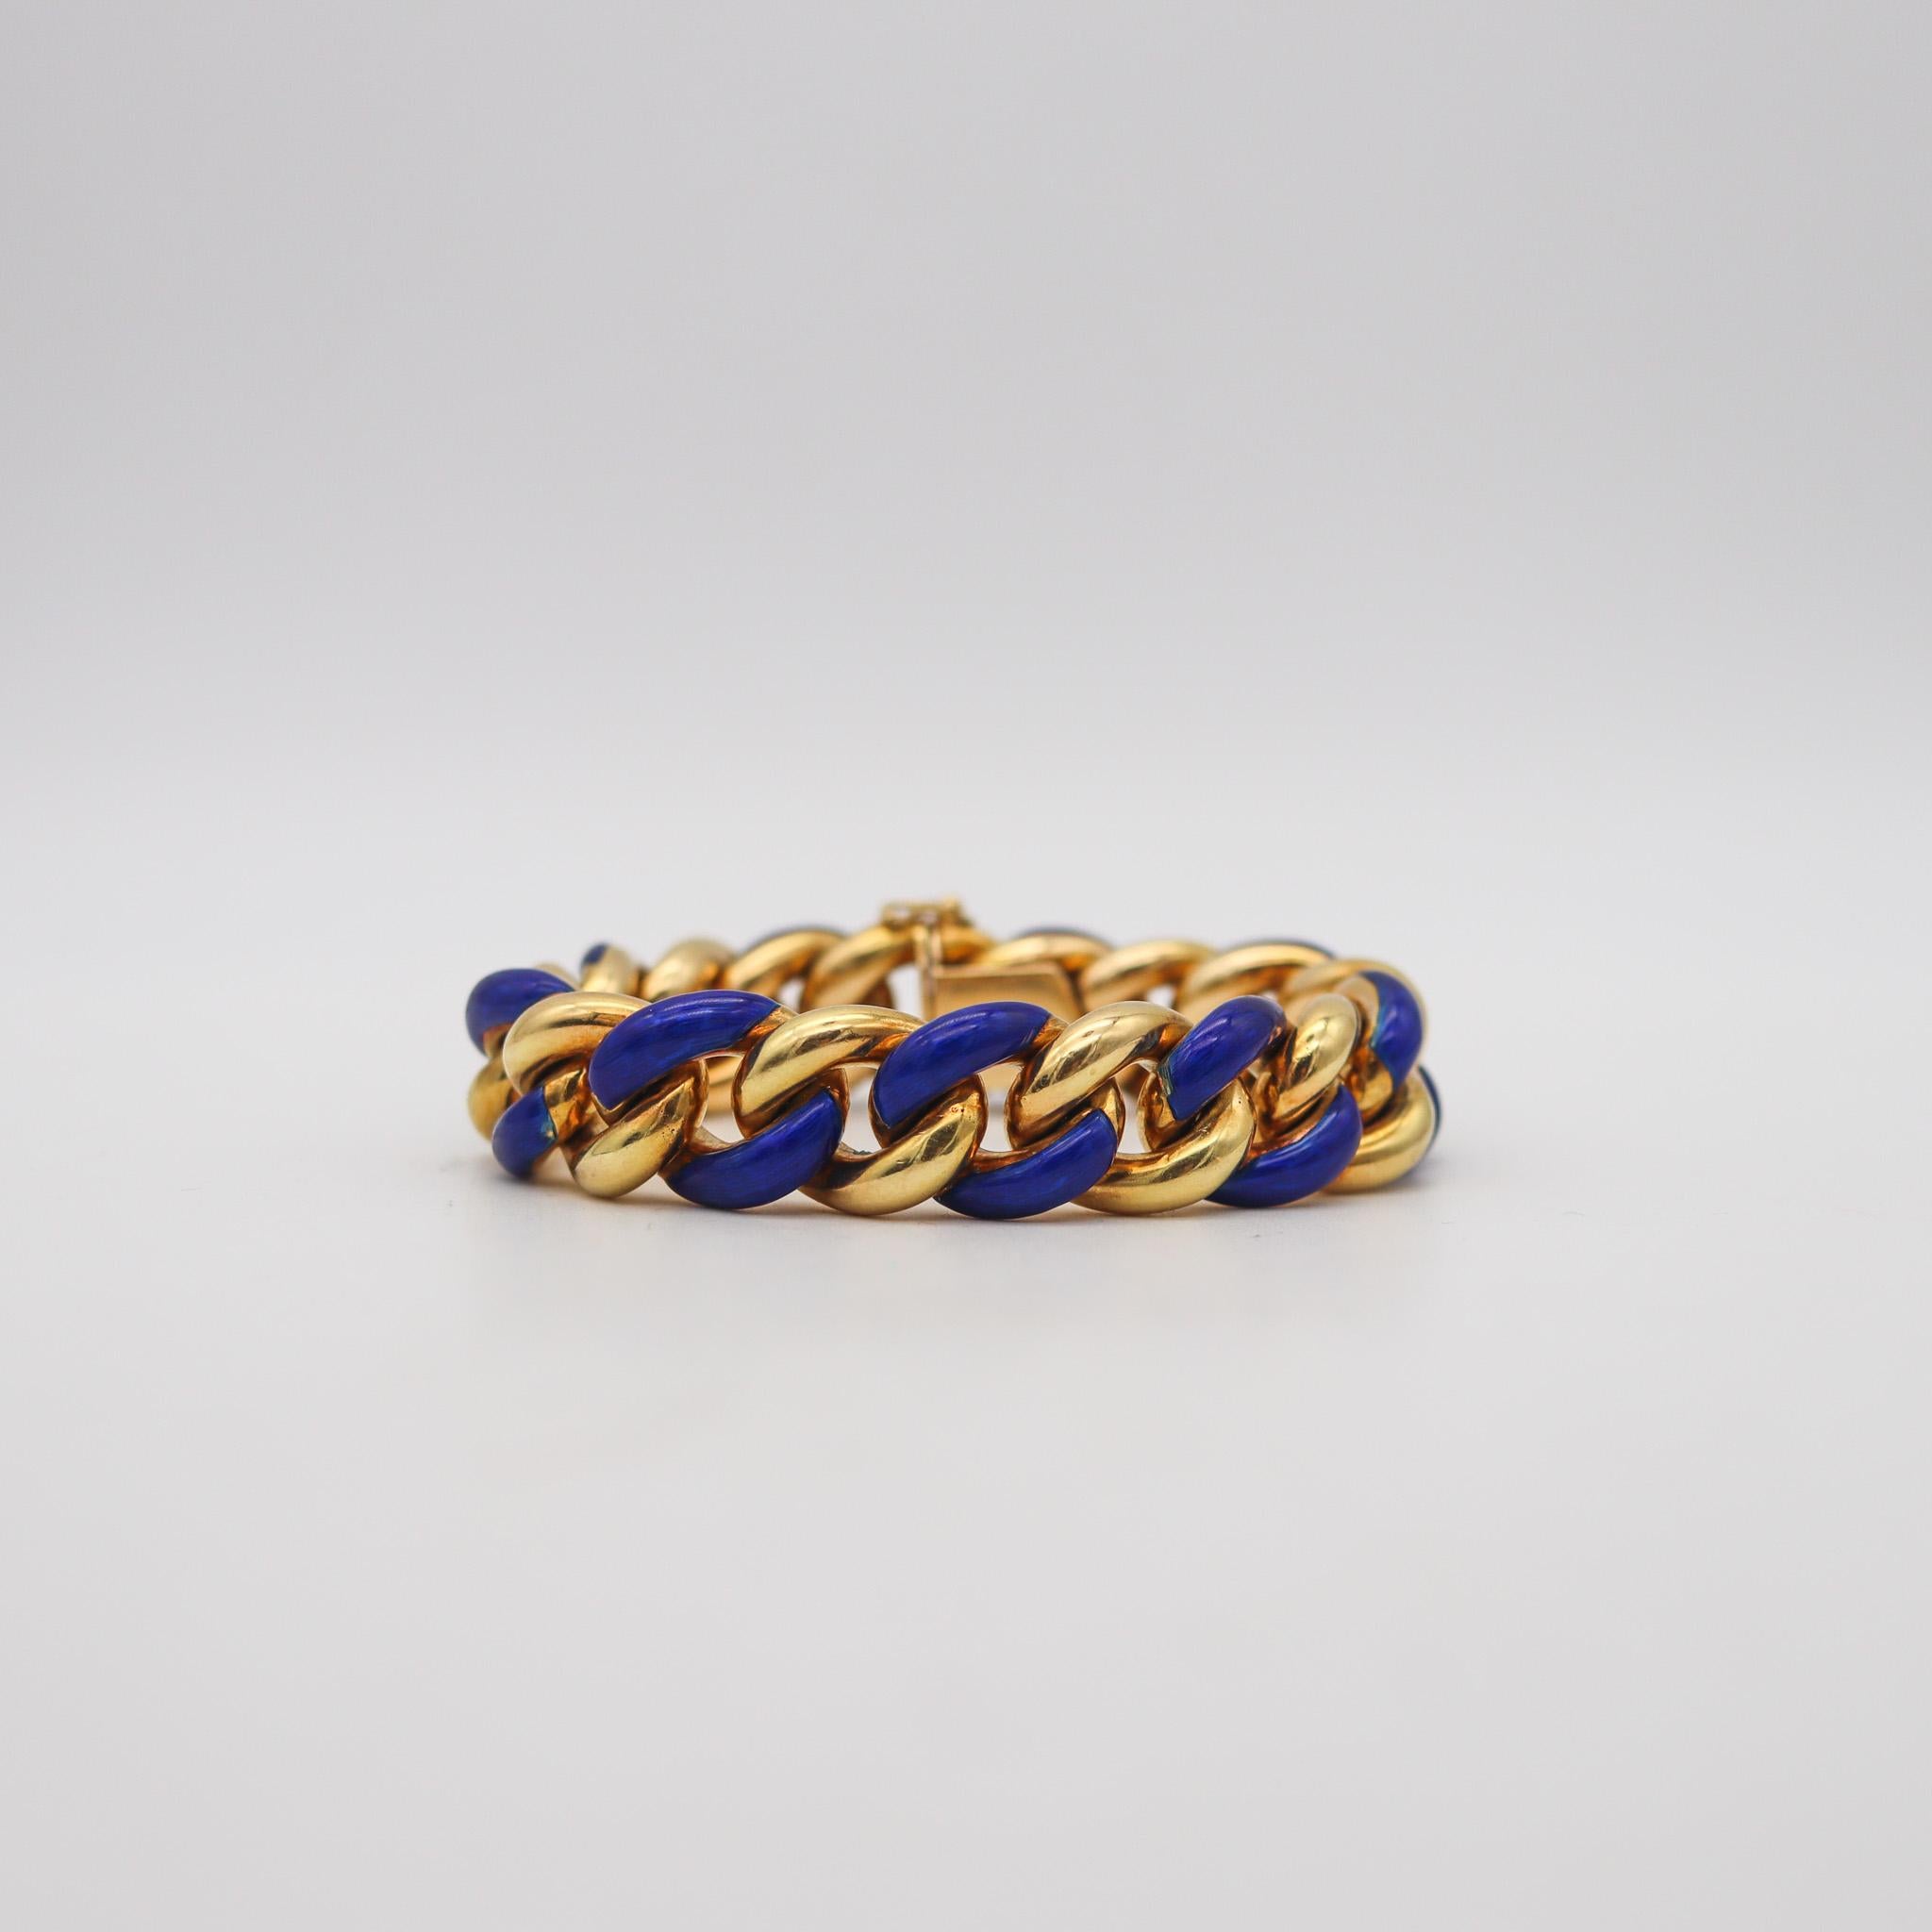 Bracelet émaillé conçu par Gay Freres.

Magnifique bracelet, créé à Paris en France pendant la période moderniste, dans les années 1970. Ce superbe bracelet à maillons a été fabriqué dans l'atelier de joaillerie de Gay Frères en or jaune massif de